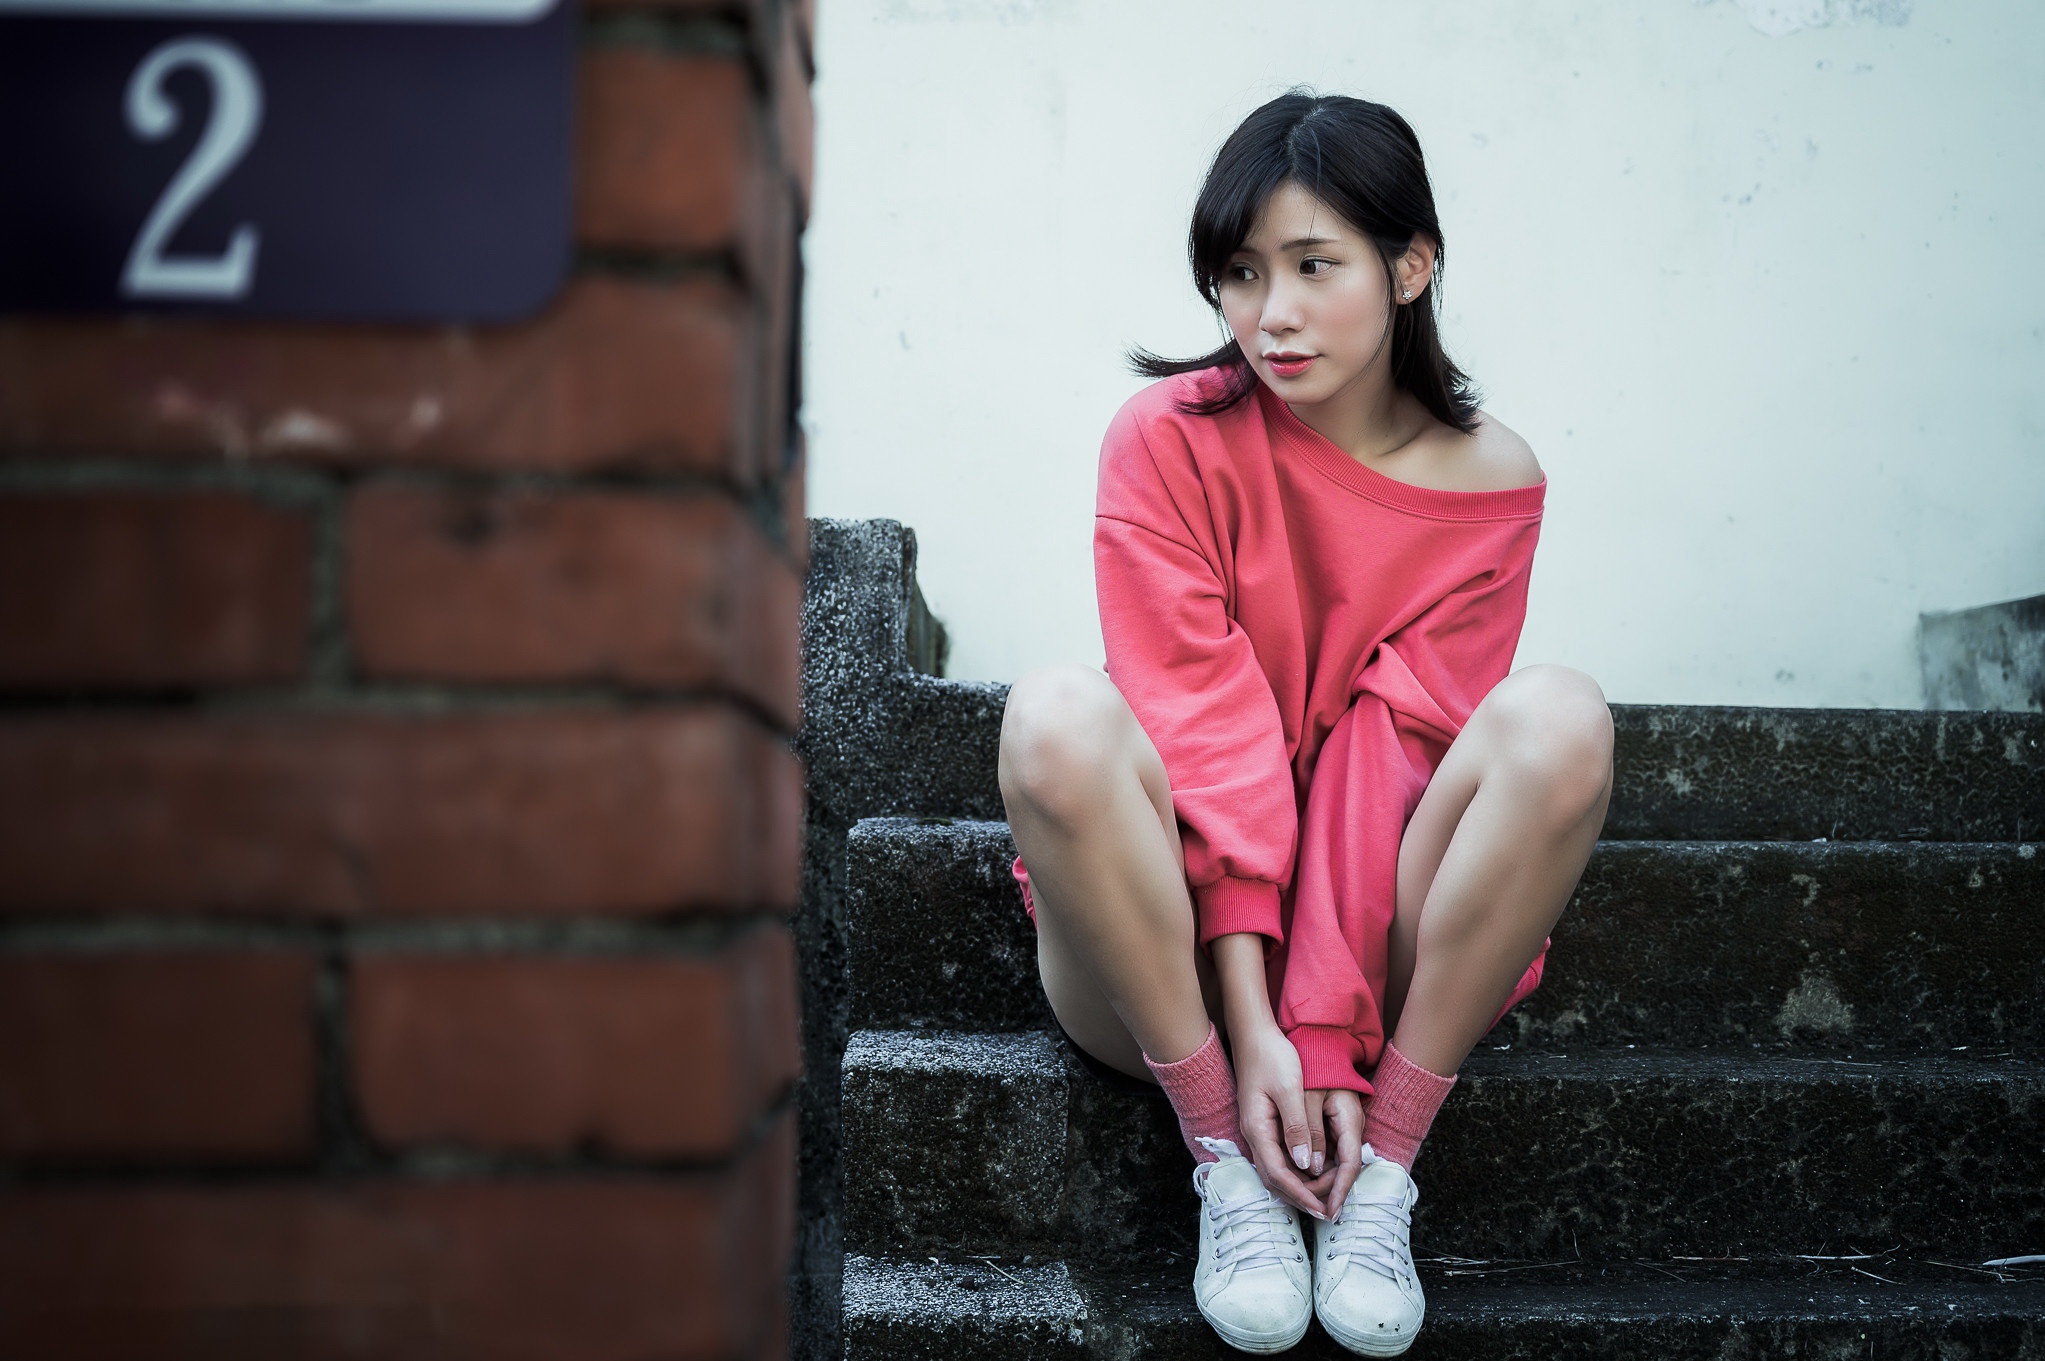 Asian Women Model Stairs Bricks Numbers Legs Dark Hair Looking Away 2045x1361